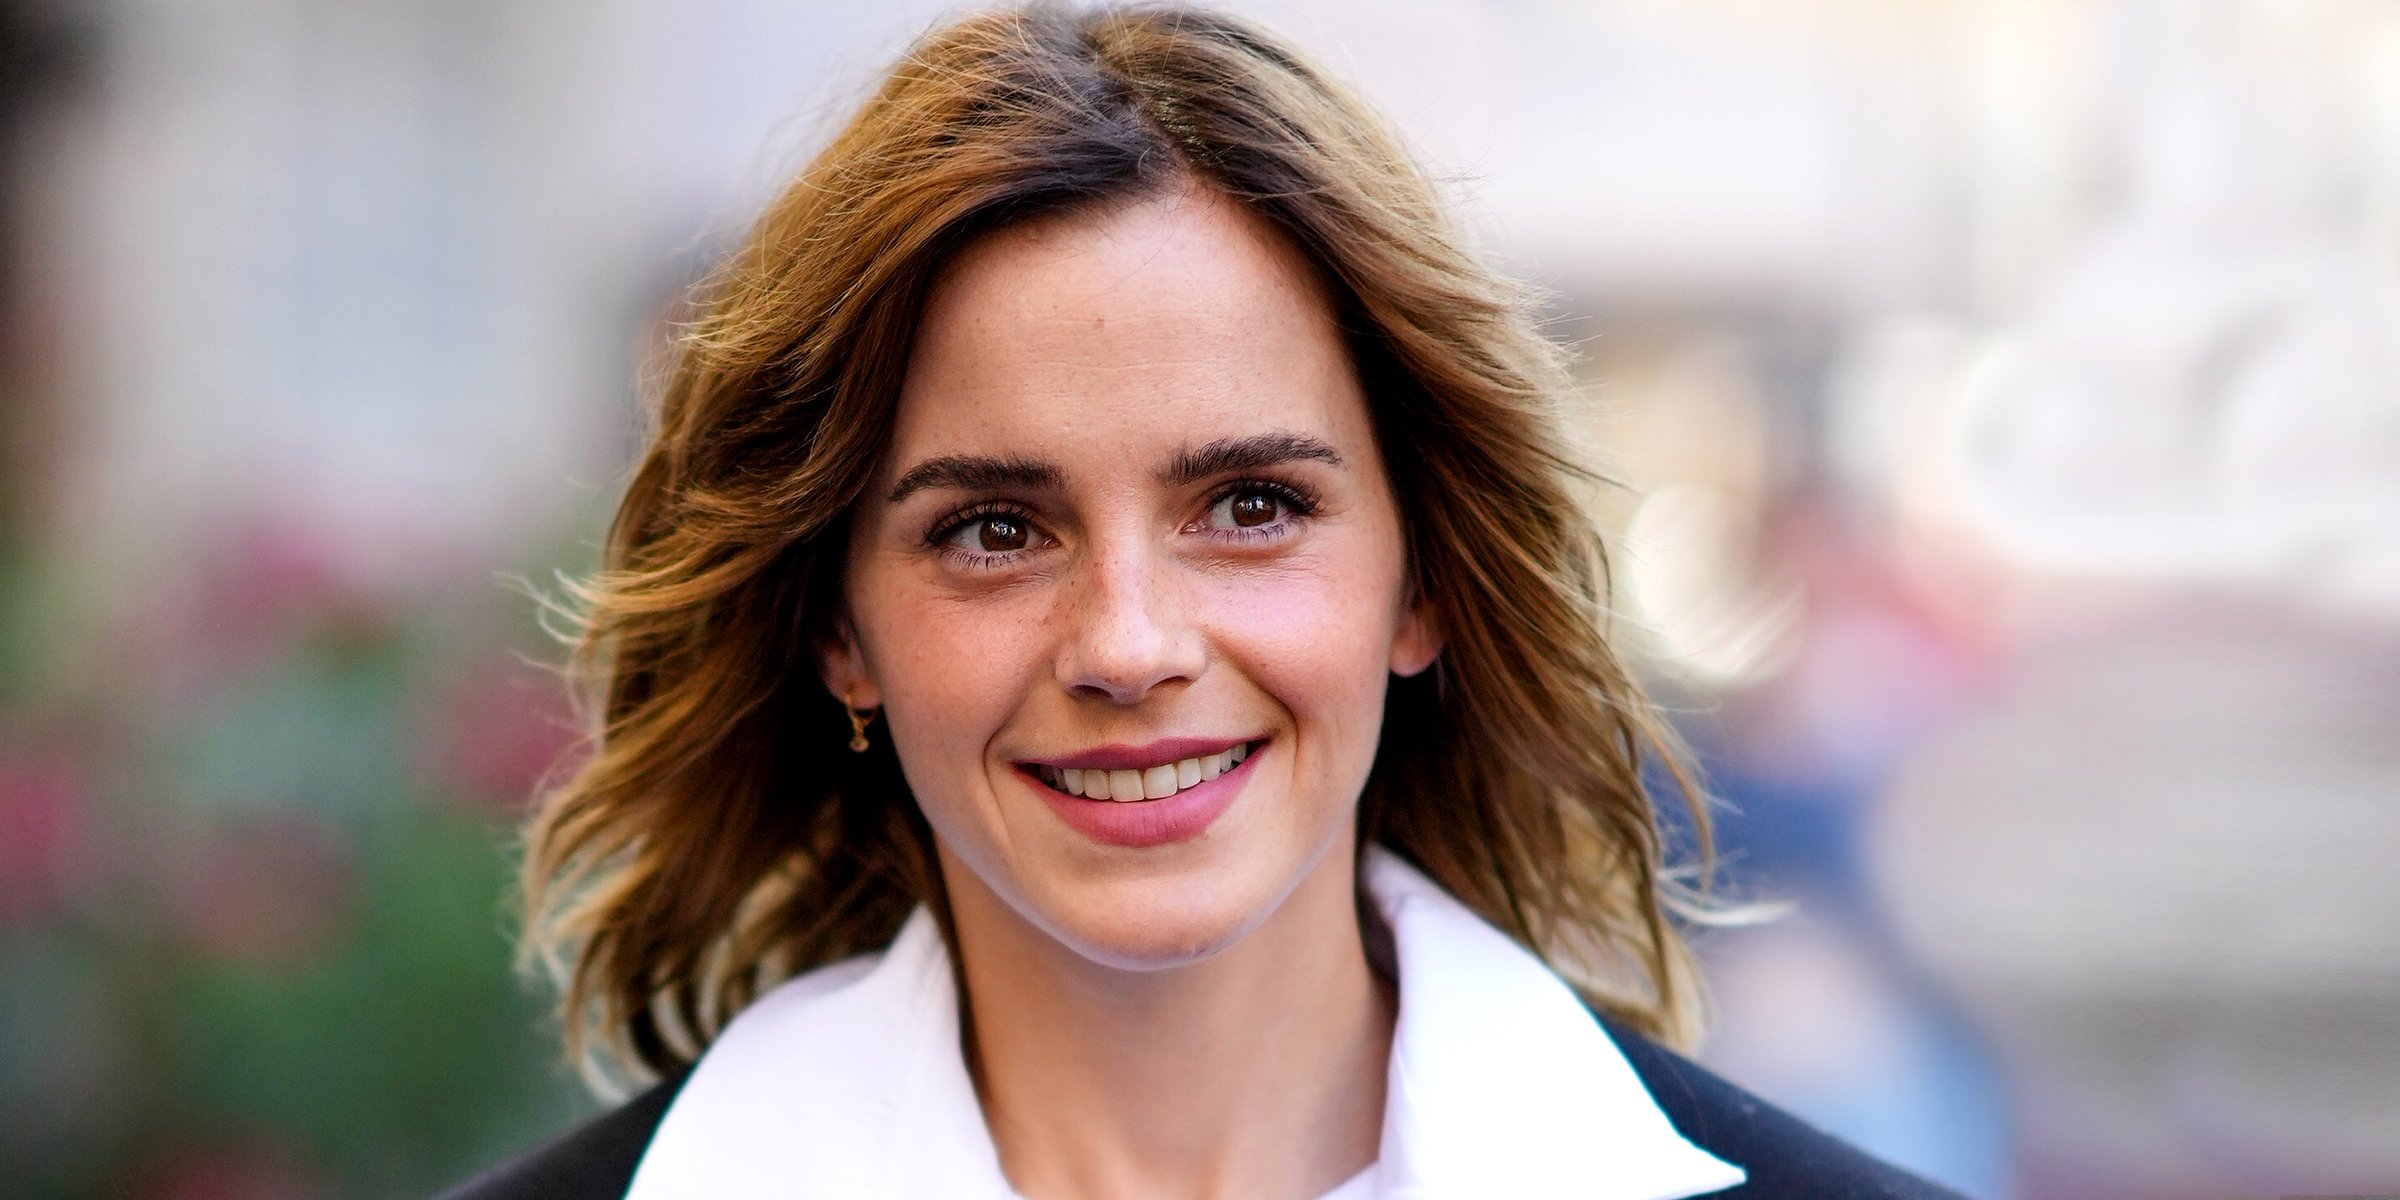 Leo Robinton'ın İddiaya Göre Emma Watson'ın Nişanlı Olduğu Söylentileri Eski Erkek Arkadaşı